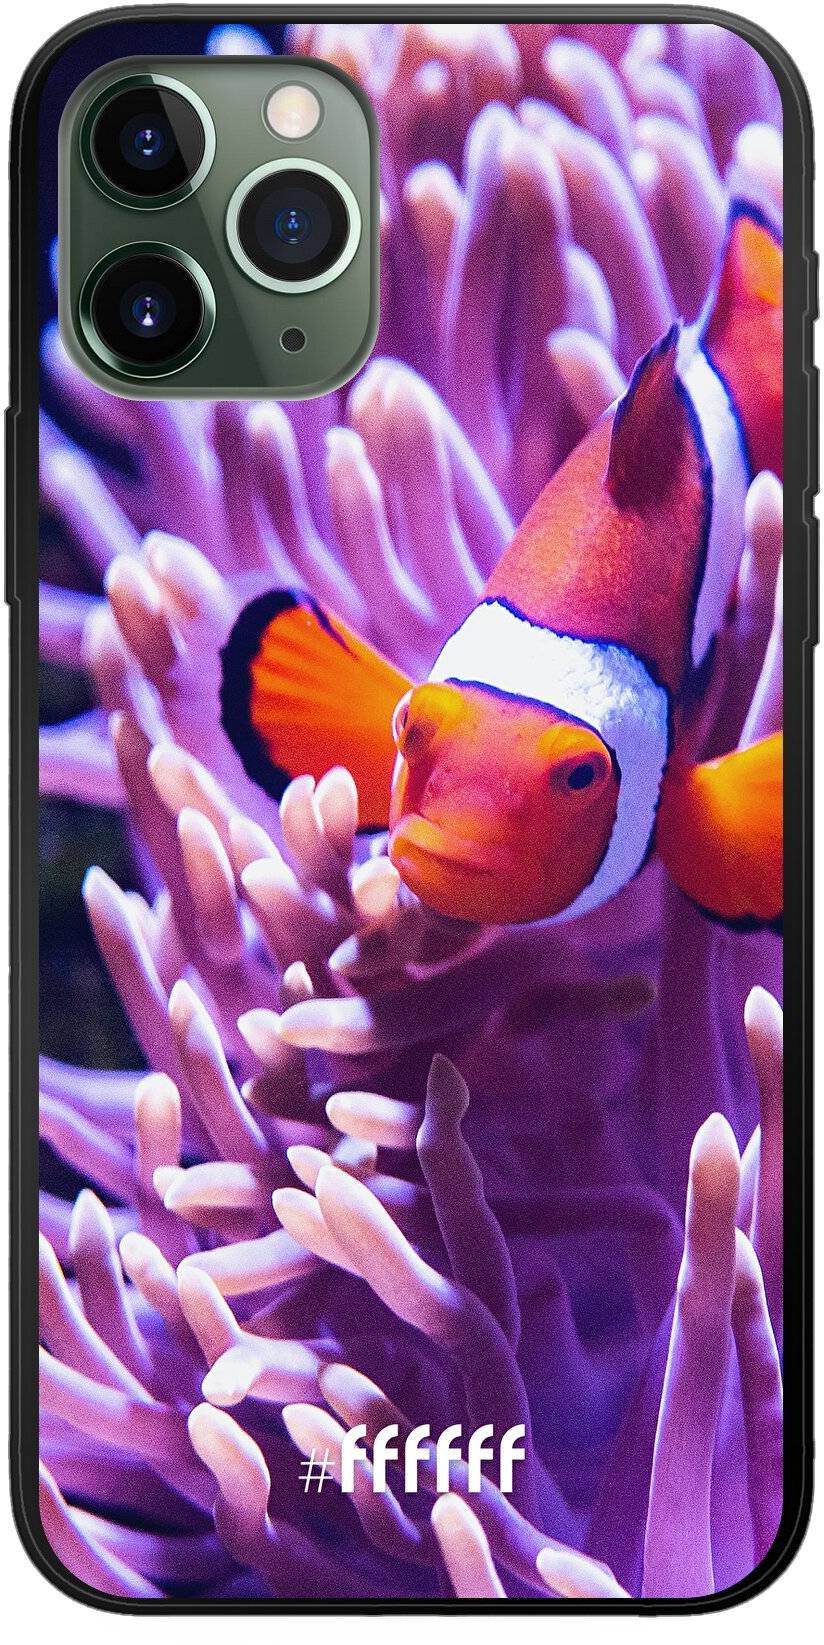 Nemo iPhone 11 Pro